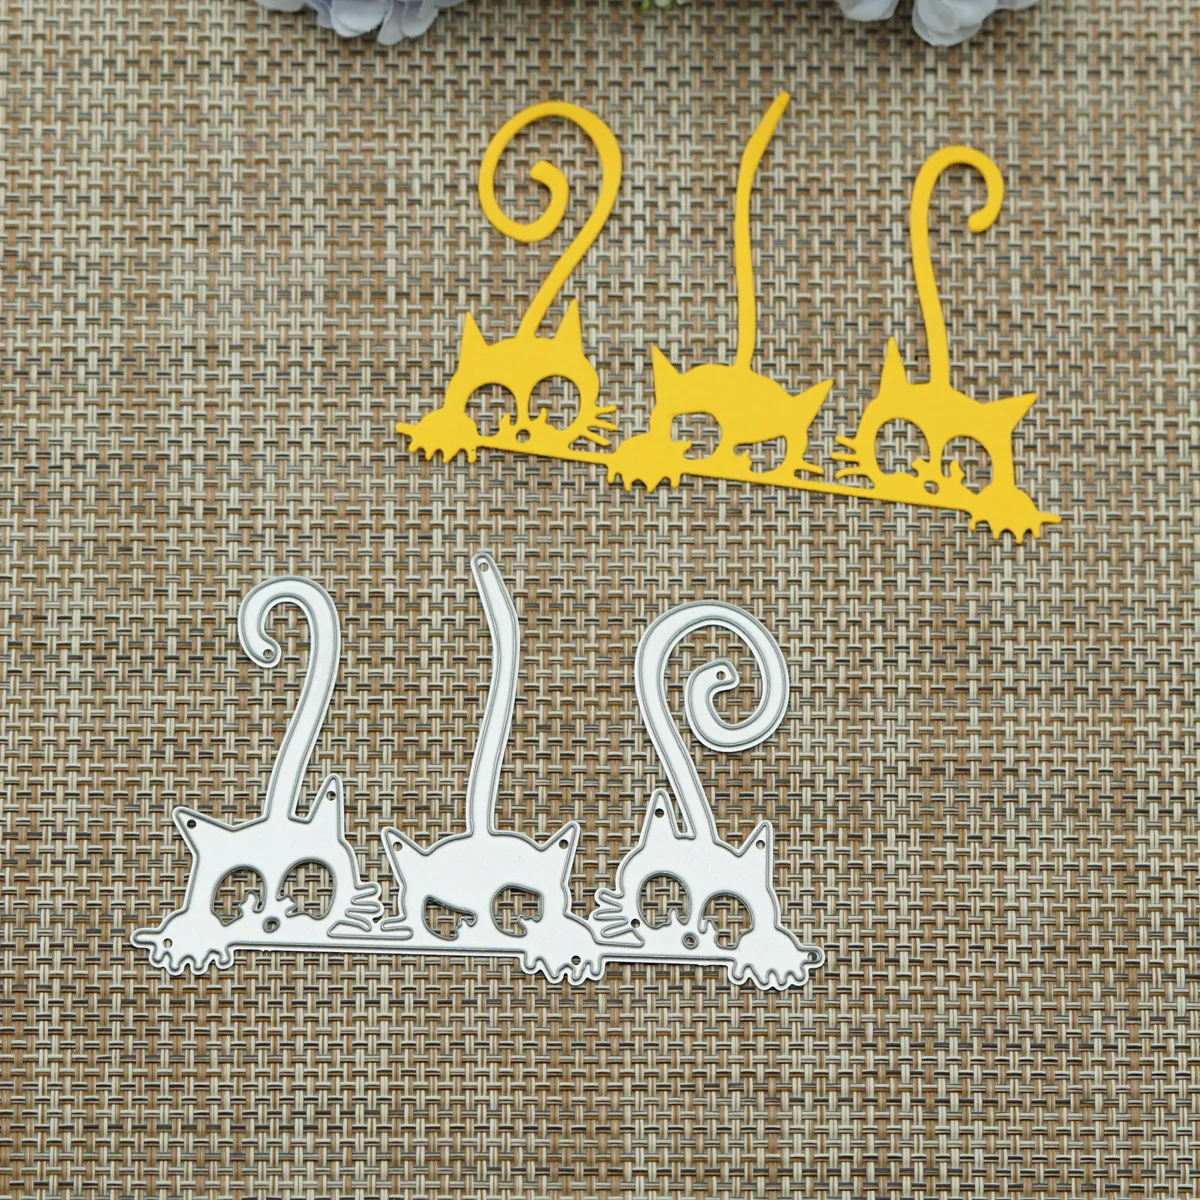  Cute Kitty Cats Шаблон Металлические режущие штампы для скрапбукинга Карта Фото Украшение Ремесло Бумага Резак Пресс-форма